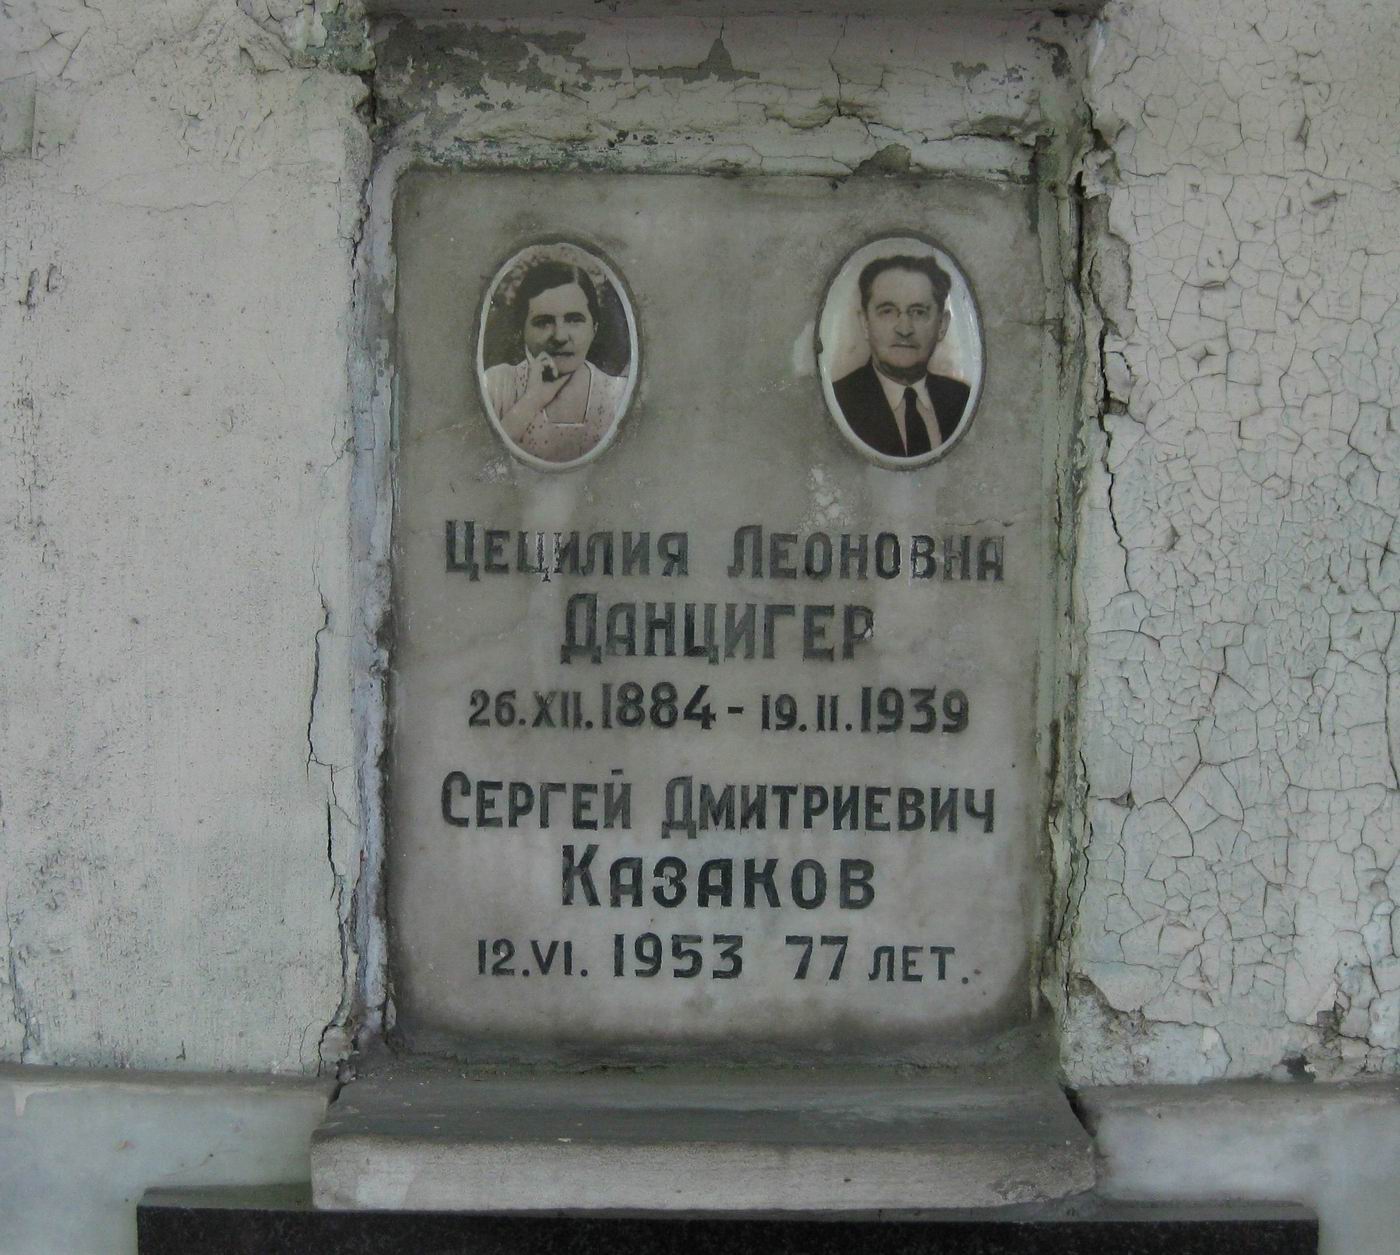 Плита на нише Данцигер Ц.Л. (1884-1939), на Новодевичьем кладбище (колумбарий [19]-4-2).